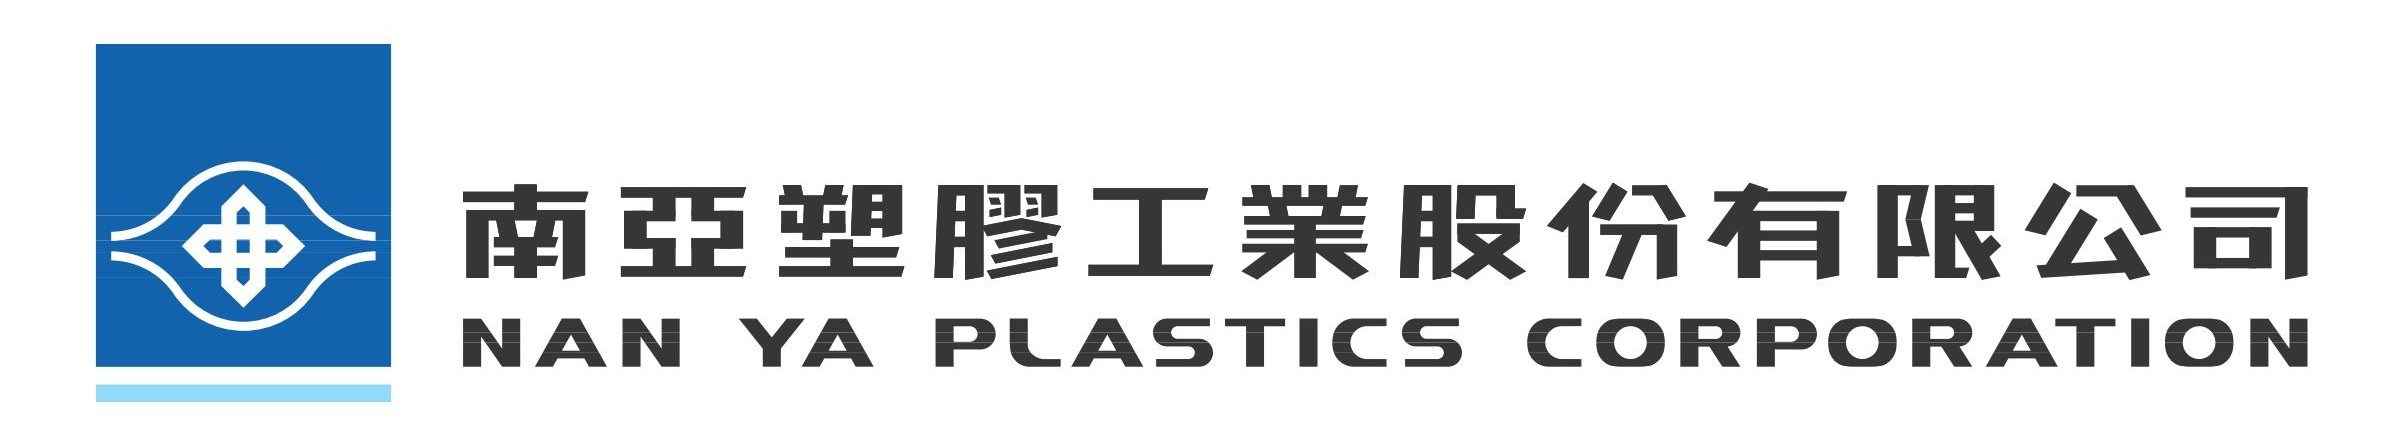 Nan Ya Plastic Logo png